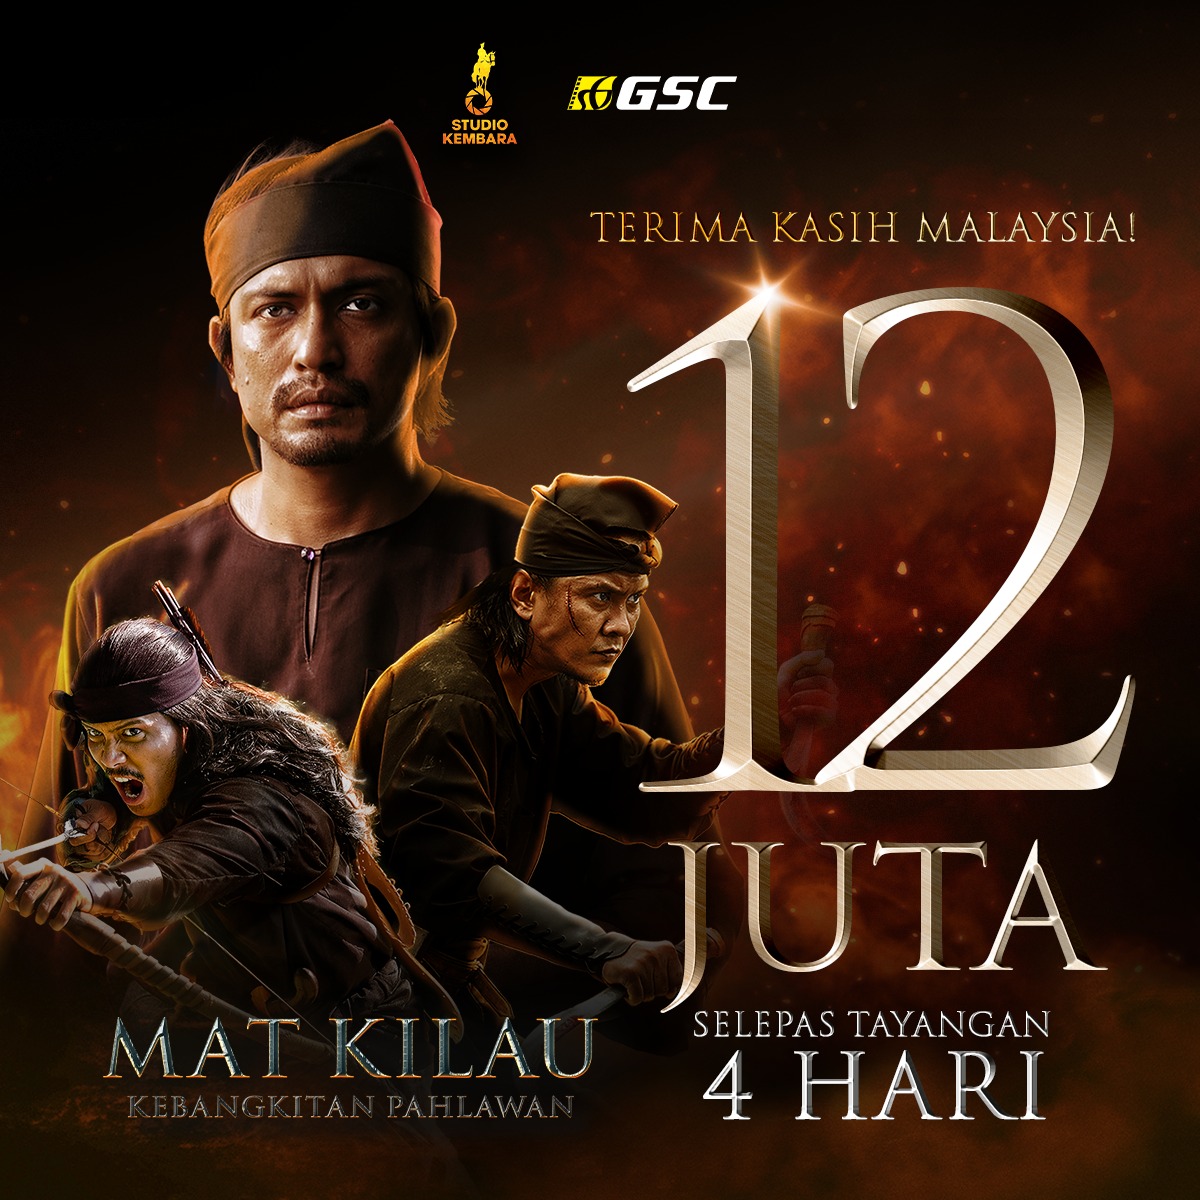 马来史诗电影《Mat Kilau》上映4天，收获逾1200万令吉票房。